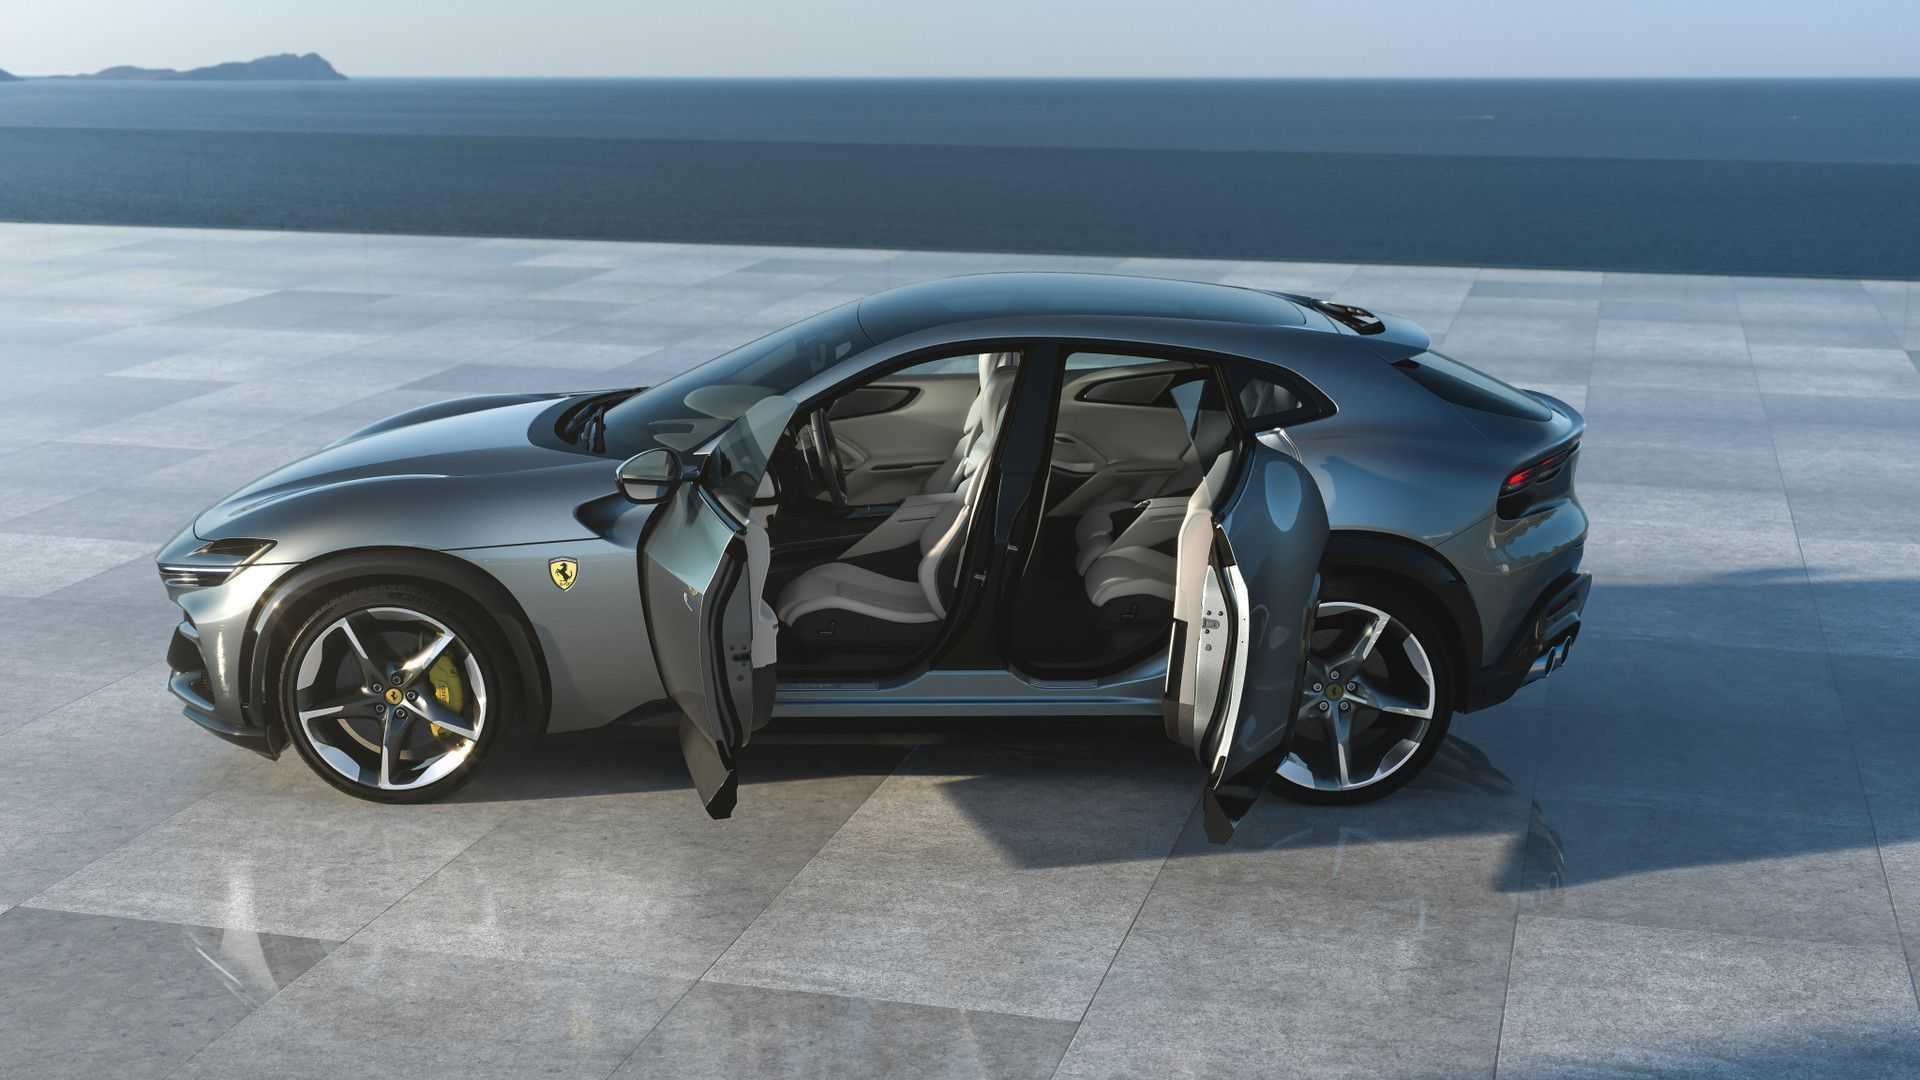 Ferrari представила purosangue – свой первый пятидверный автомобиль